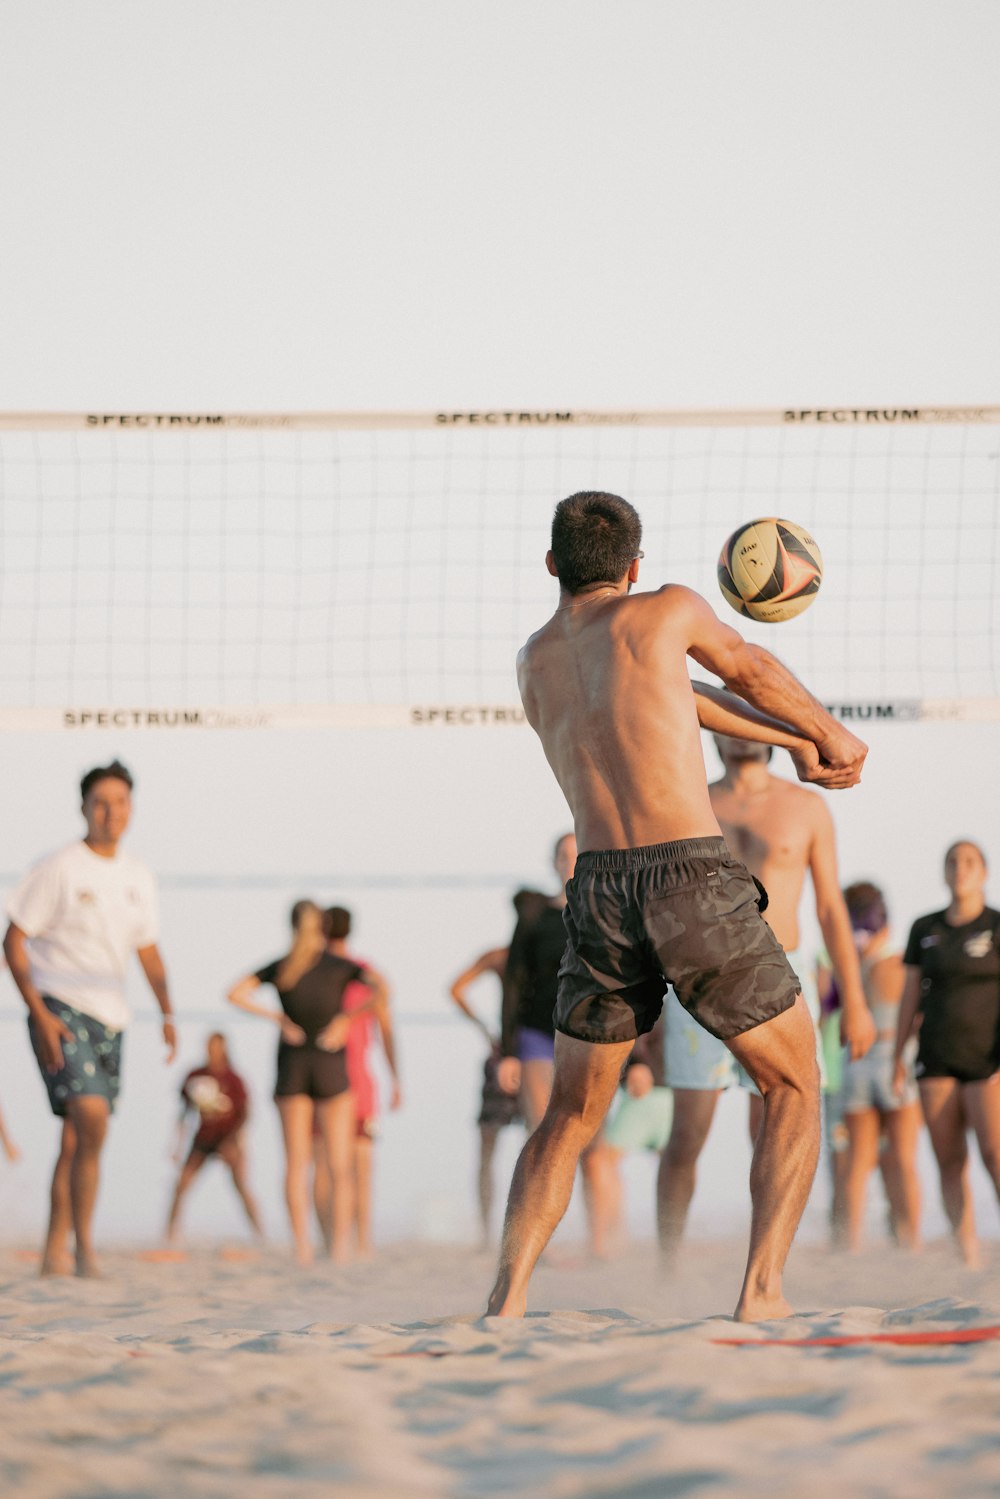 Eine Gruppe von Leuten spielt Volleyball am Strand